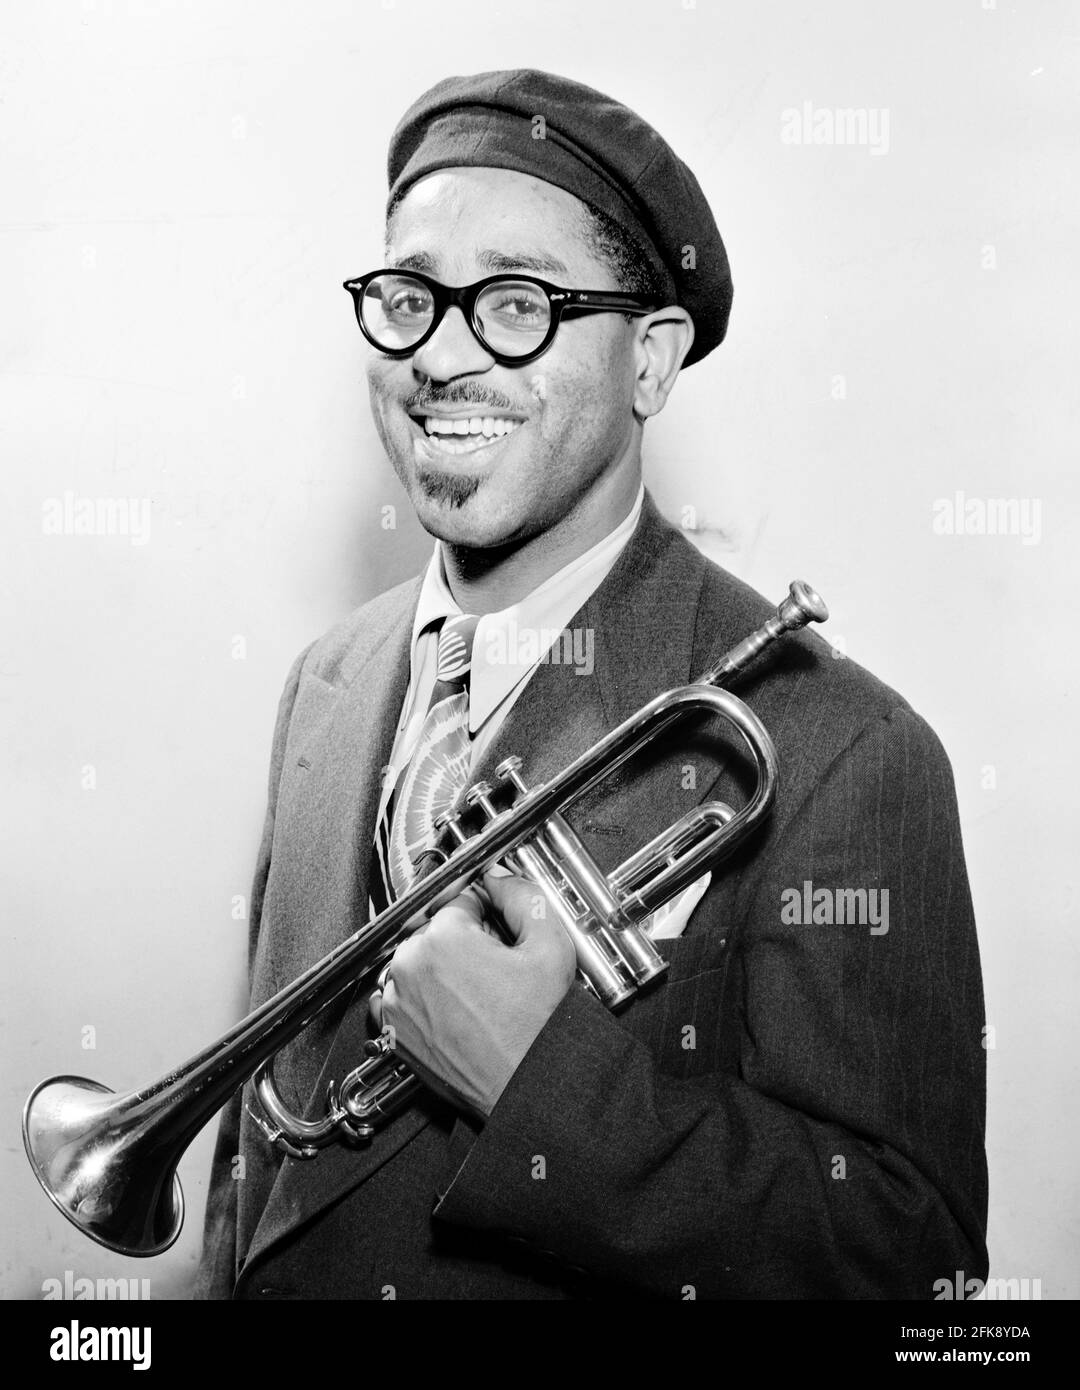 Dizzy Gillespie. Portrait du trompettiste de jazz américain, John Birks 'Dizzy' Gillespie (1917-1993), par Walter P Gottlieb, 1947 Banque D'Images